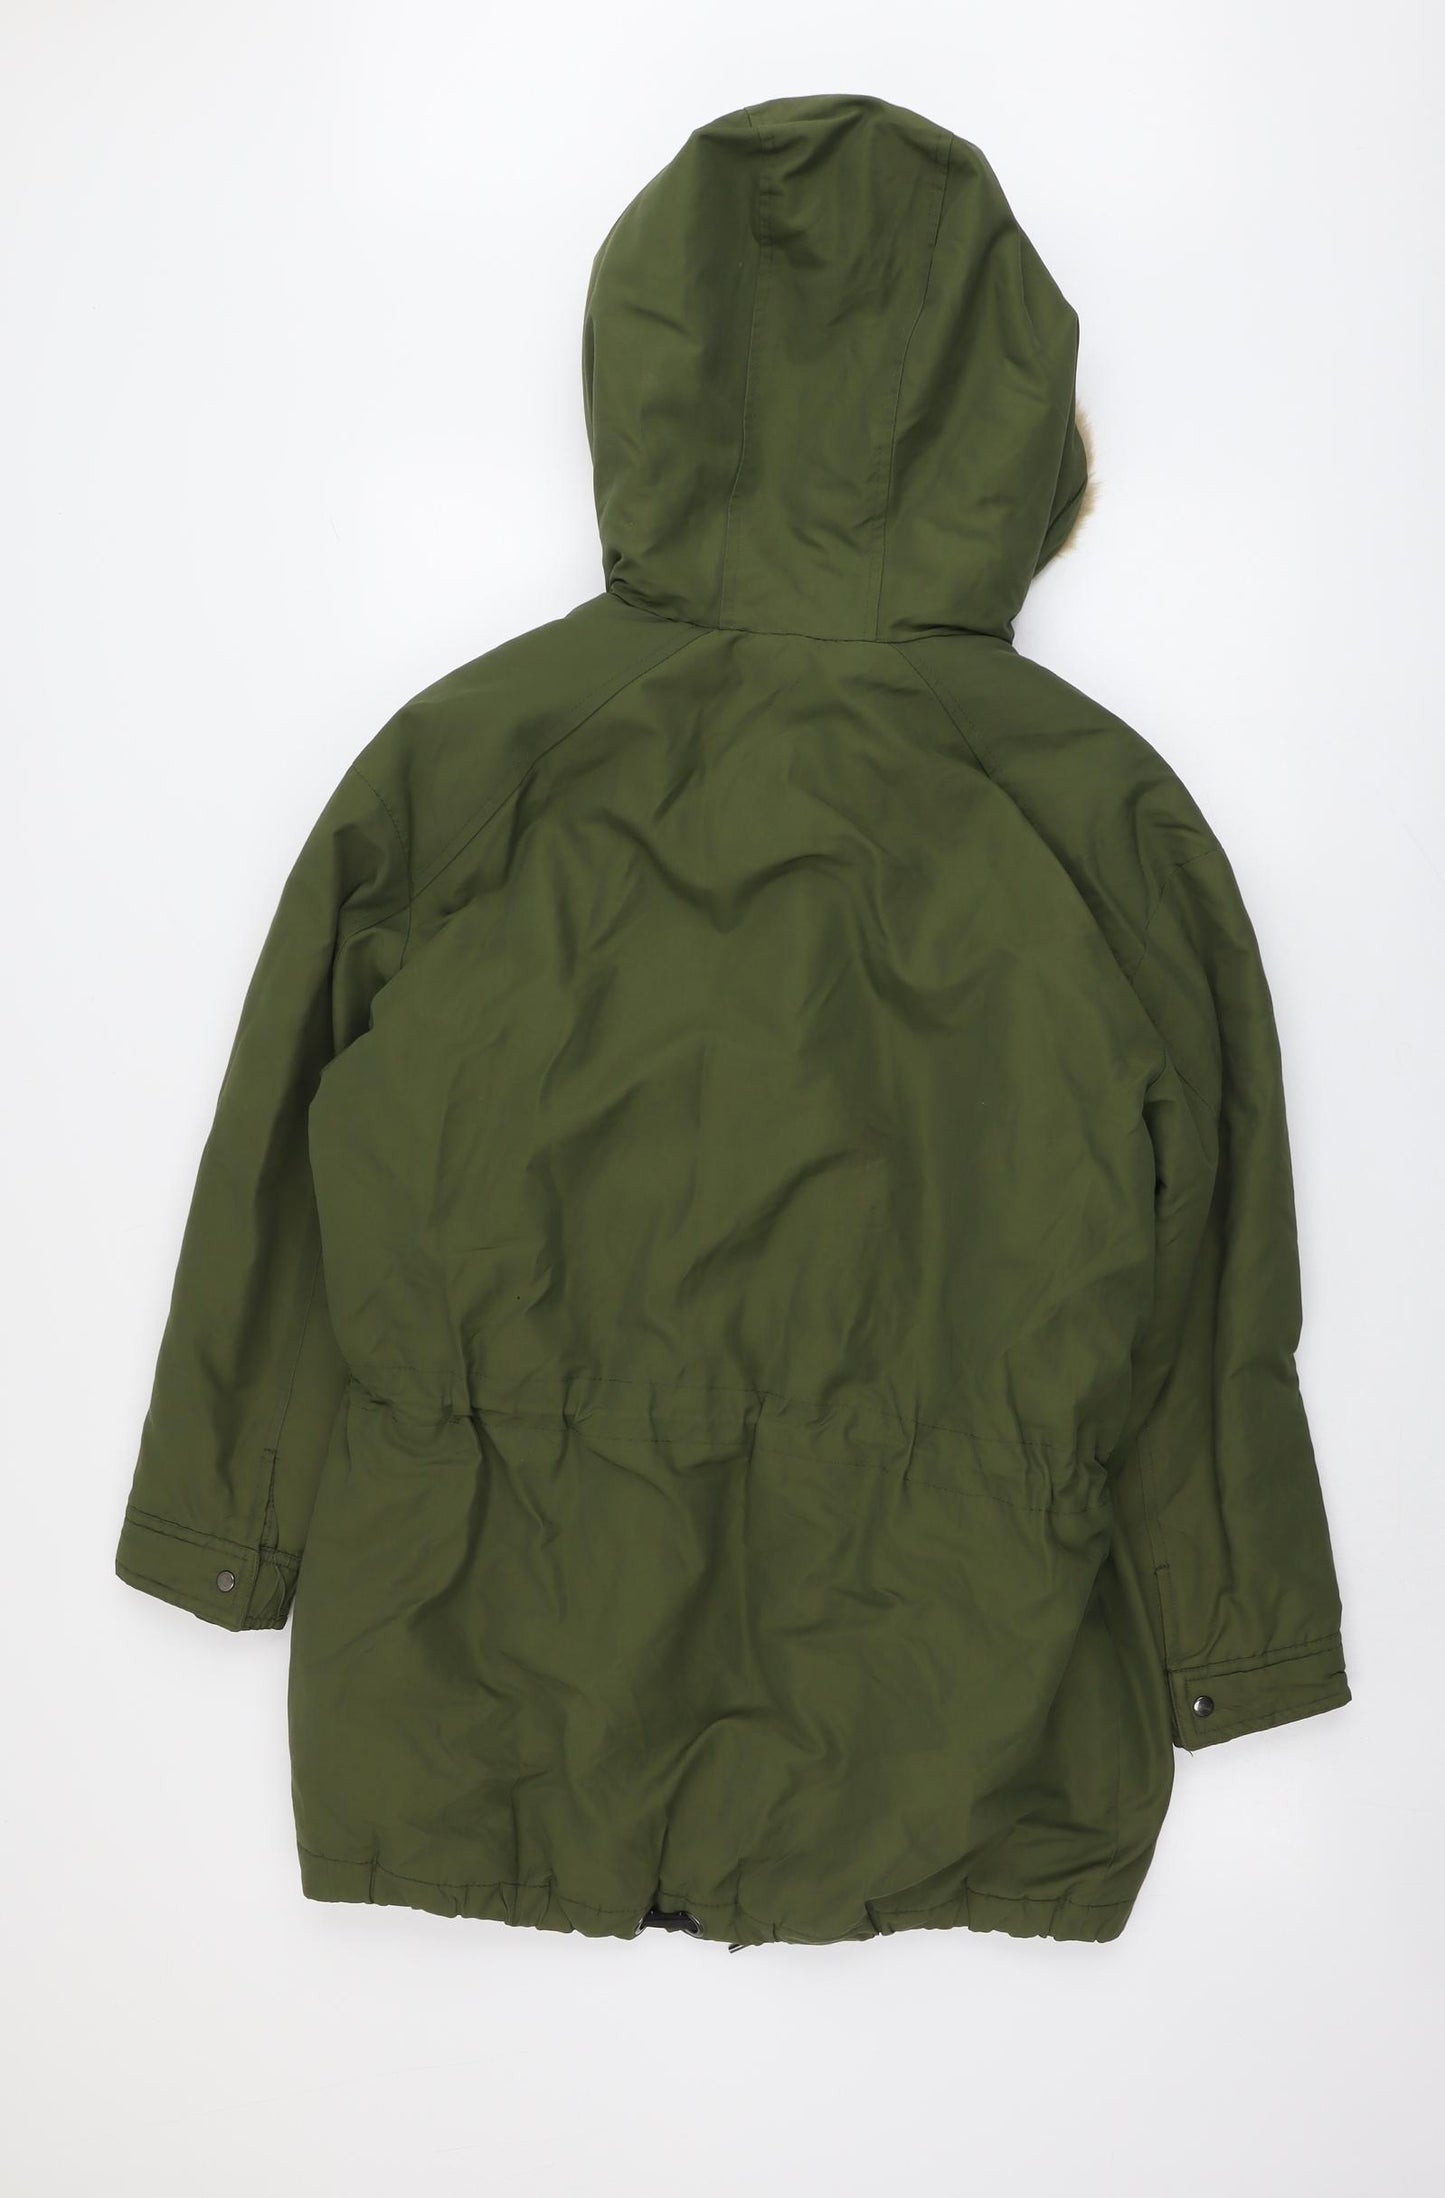 Zara Womens Green Parka Coat Size XS Zip